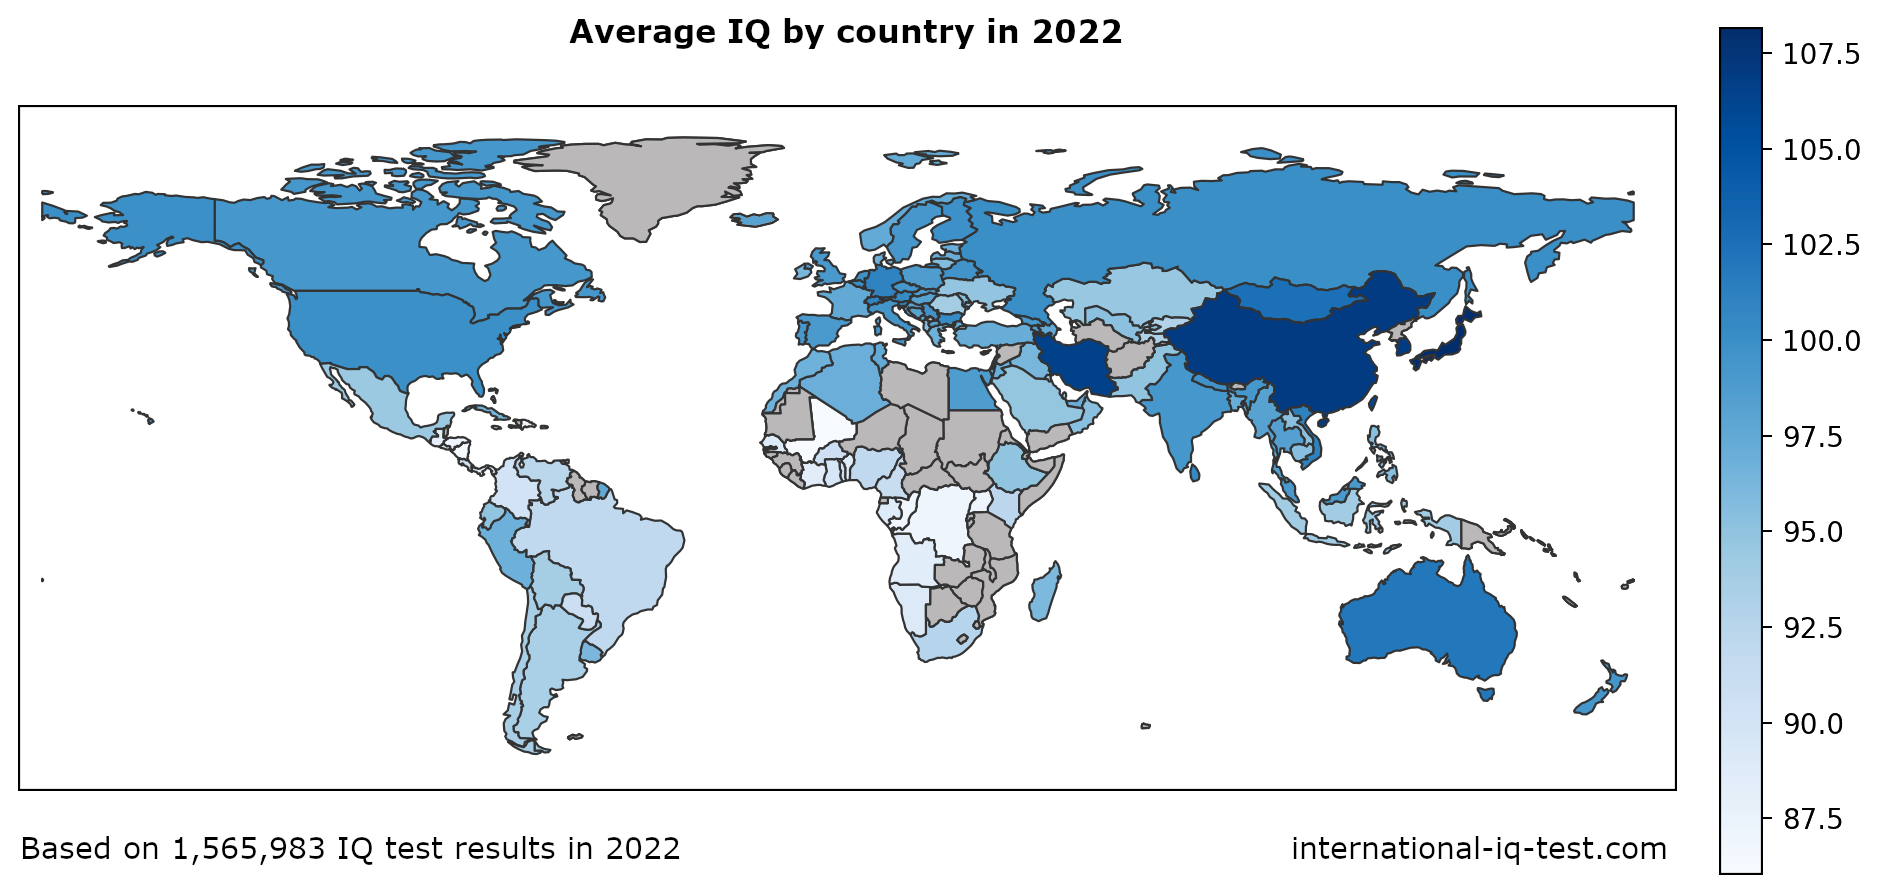 Карта світу, що показує середній рівень IQ по країнах у 2022 році з використанням відтінків синього від найсвітлішого до найтемнішого